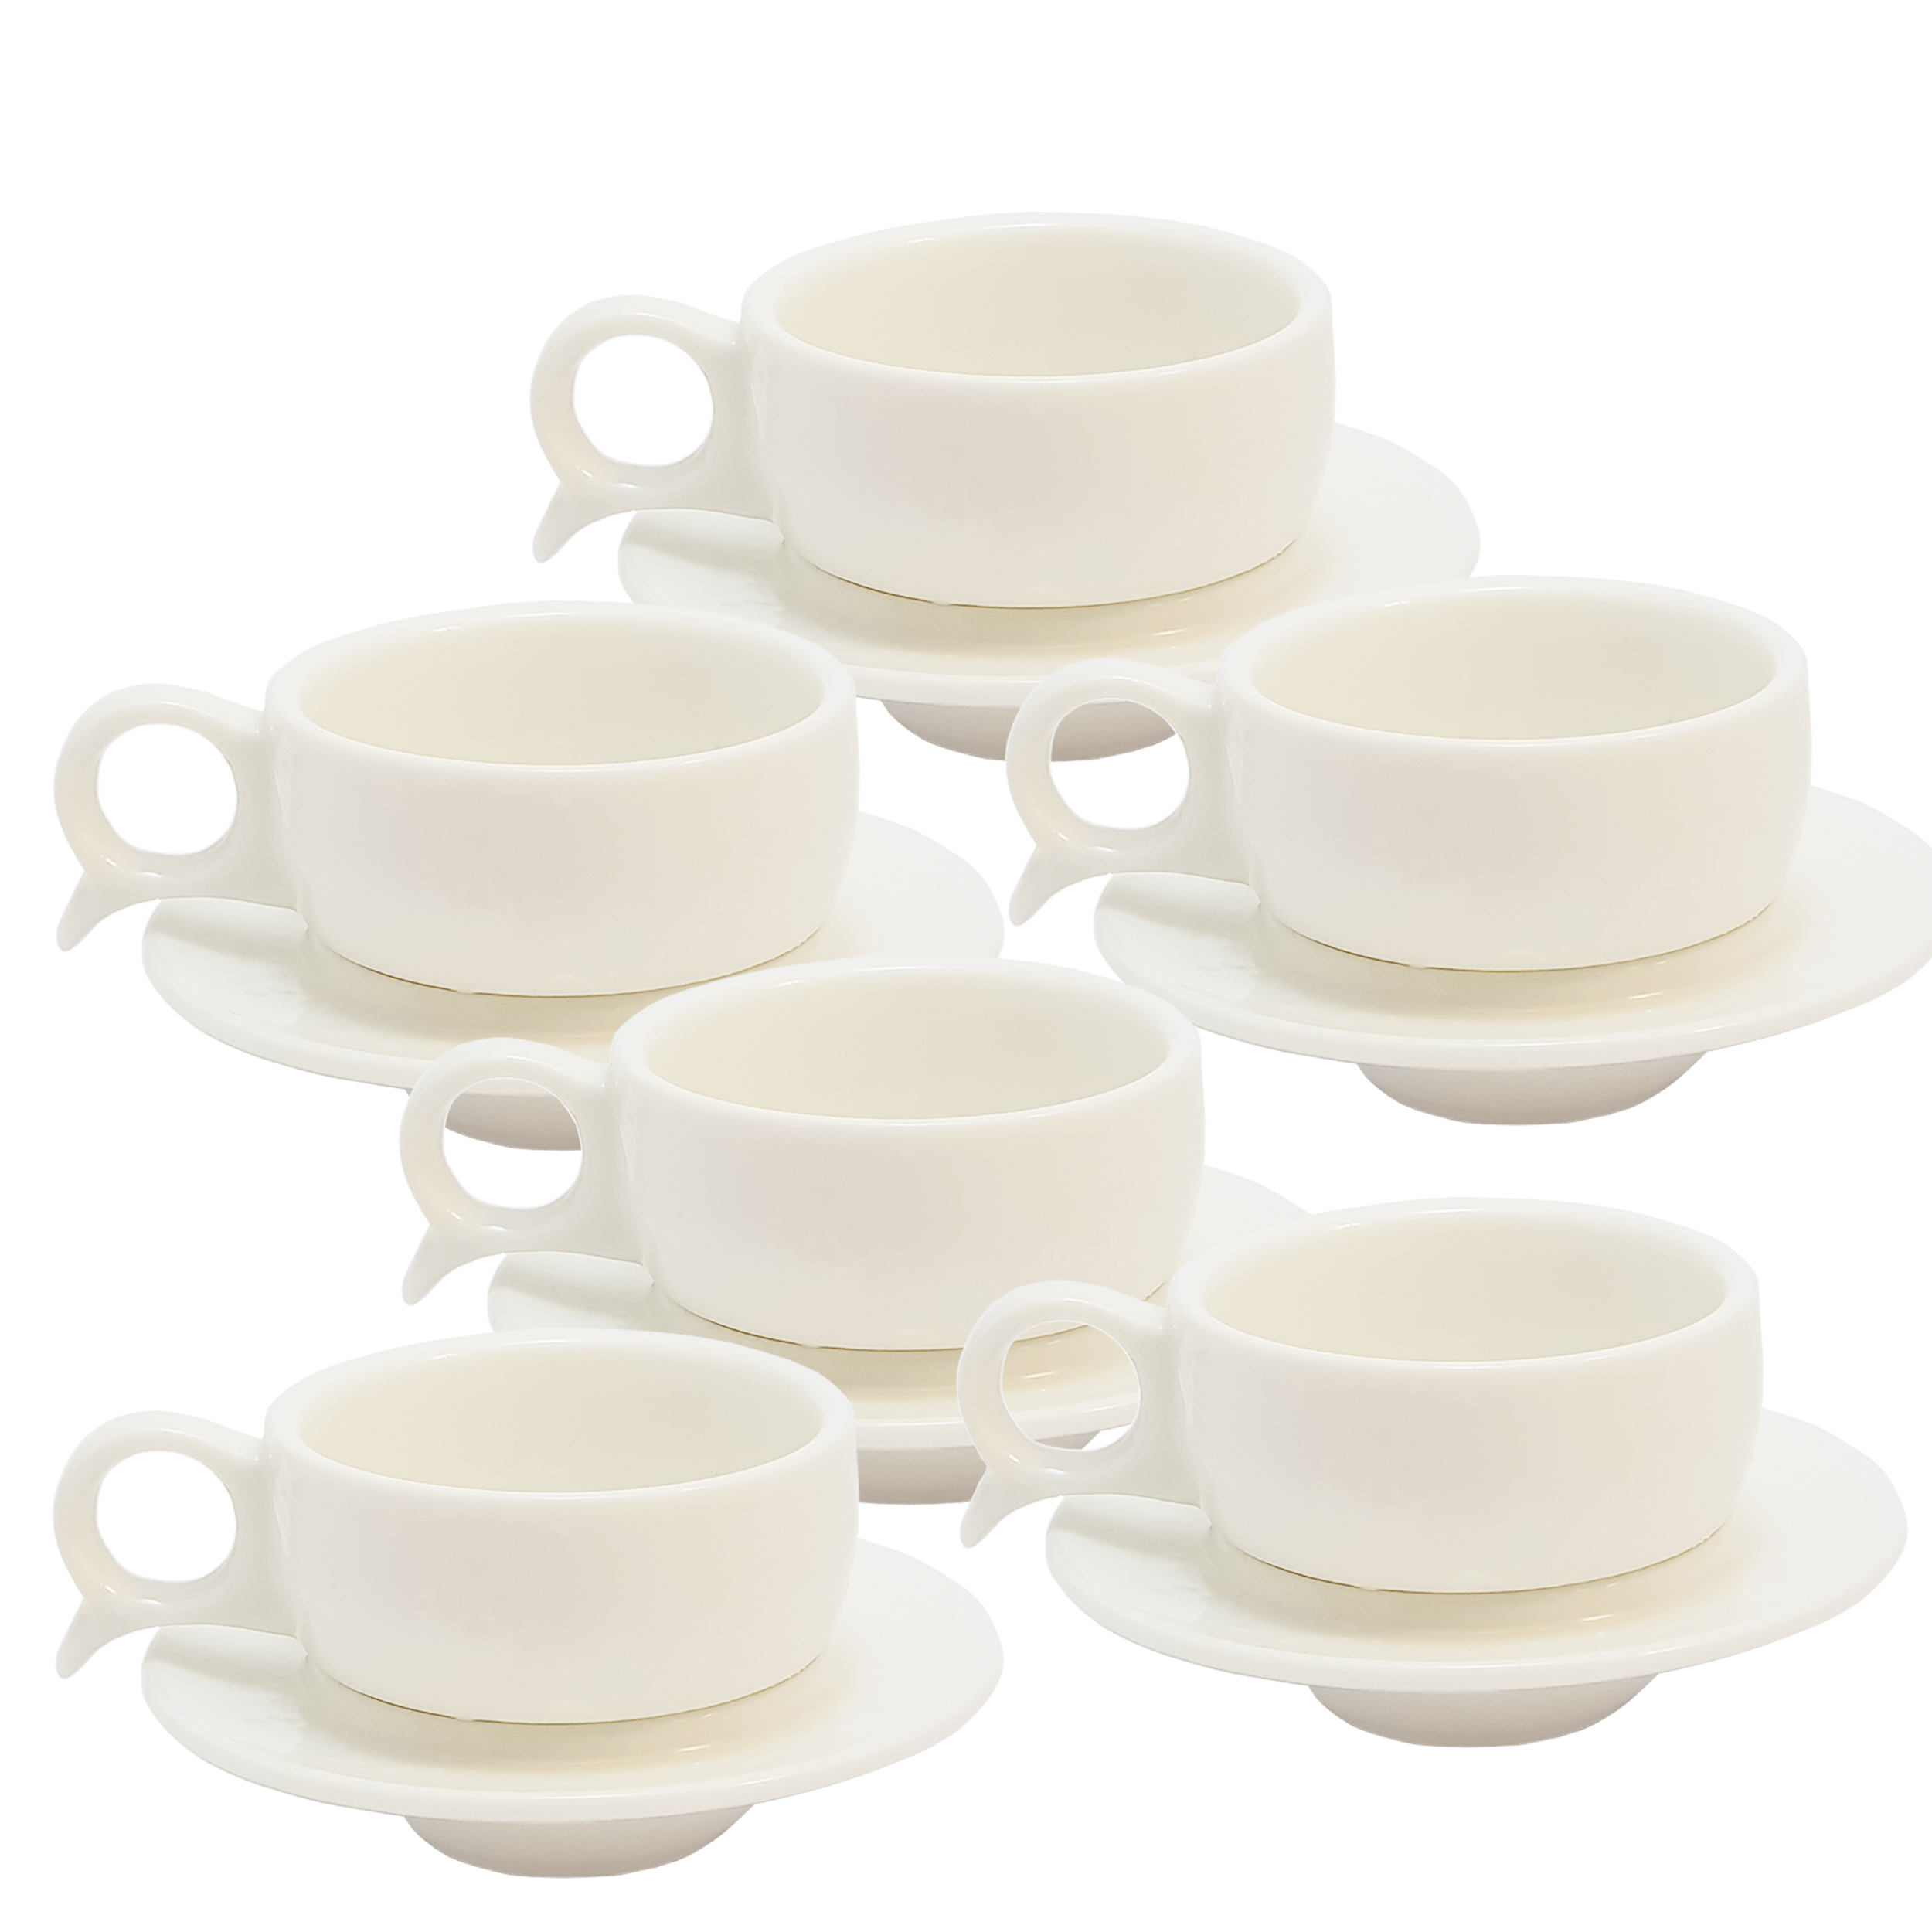 سرویس چای خوری 12 پارچه کافی ست مدل HPS